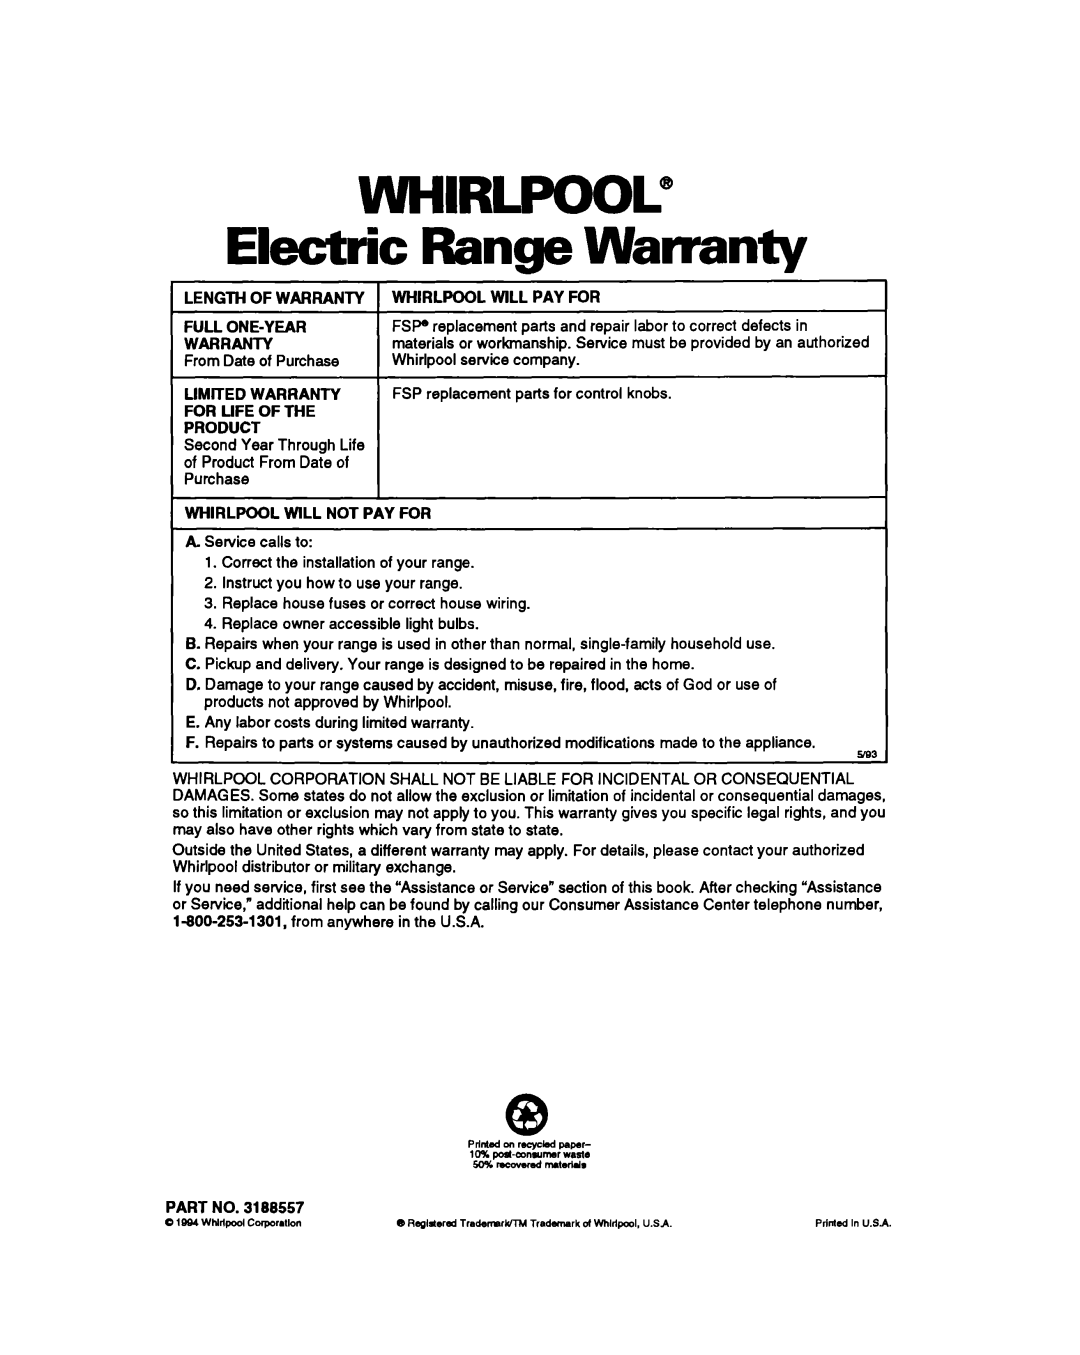 Whirlpool RS6105XB warranty WHIRLPOOL@ Electric Range Warranty 